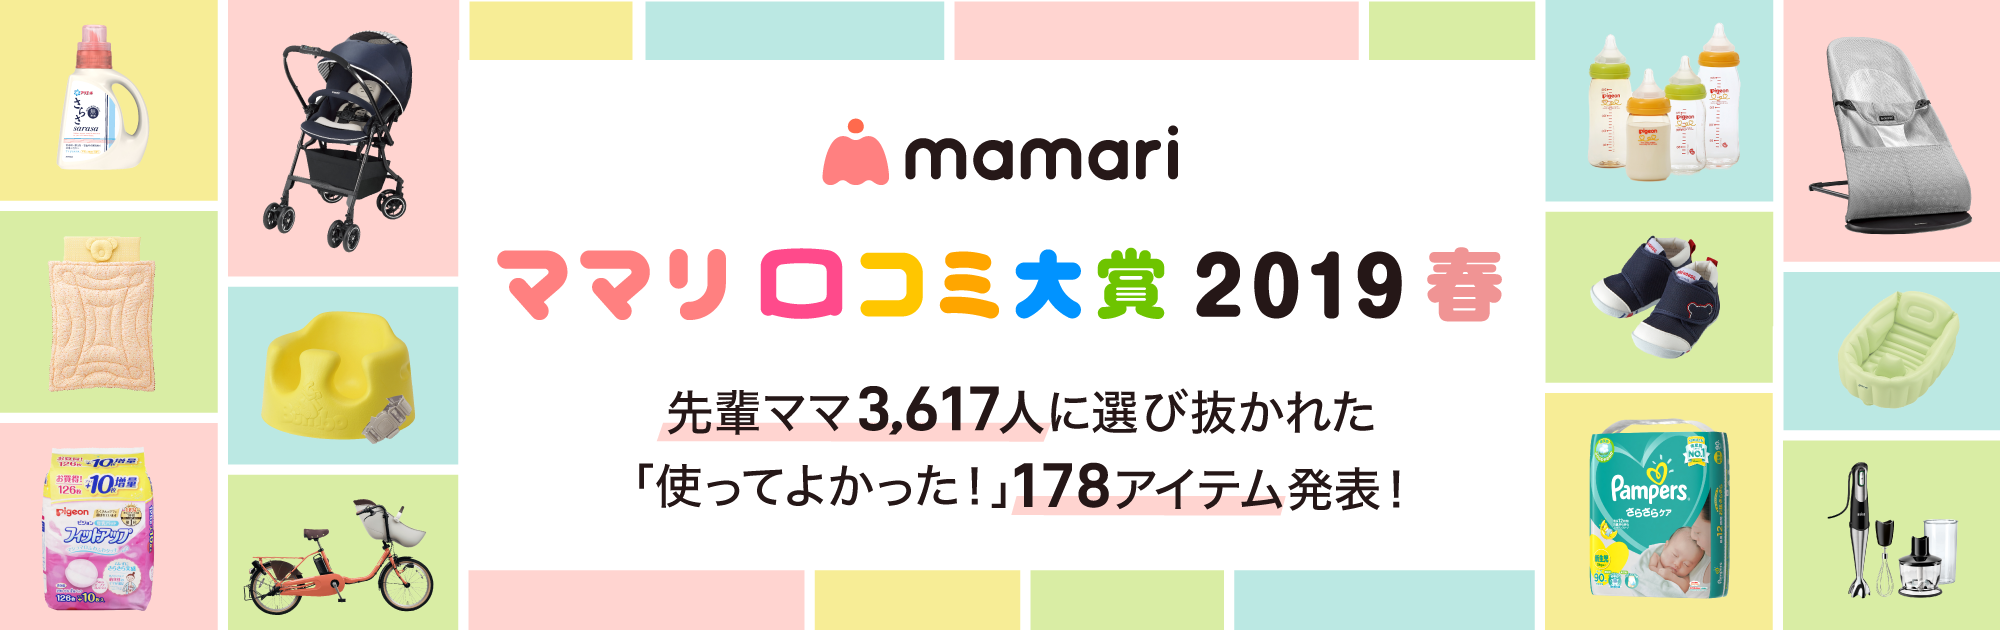 ママリ口コミ大賞2019 春